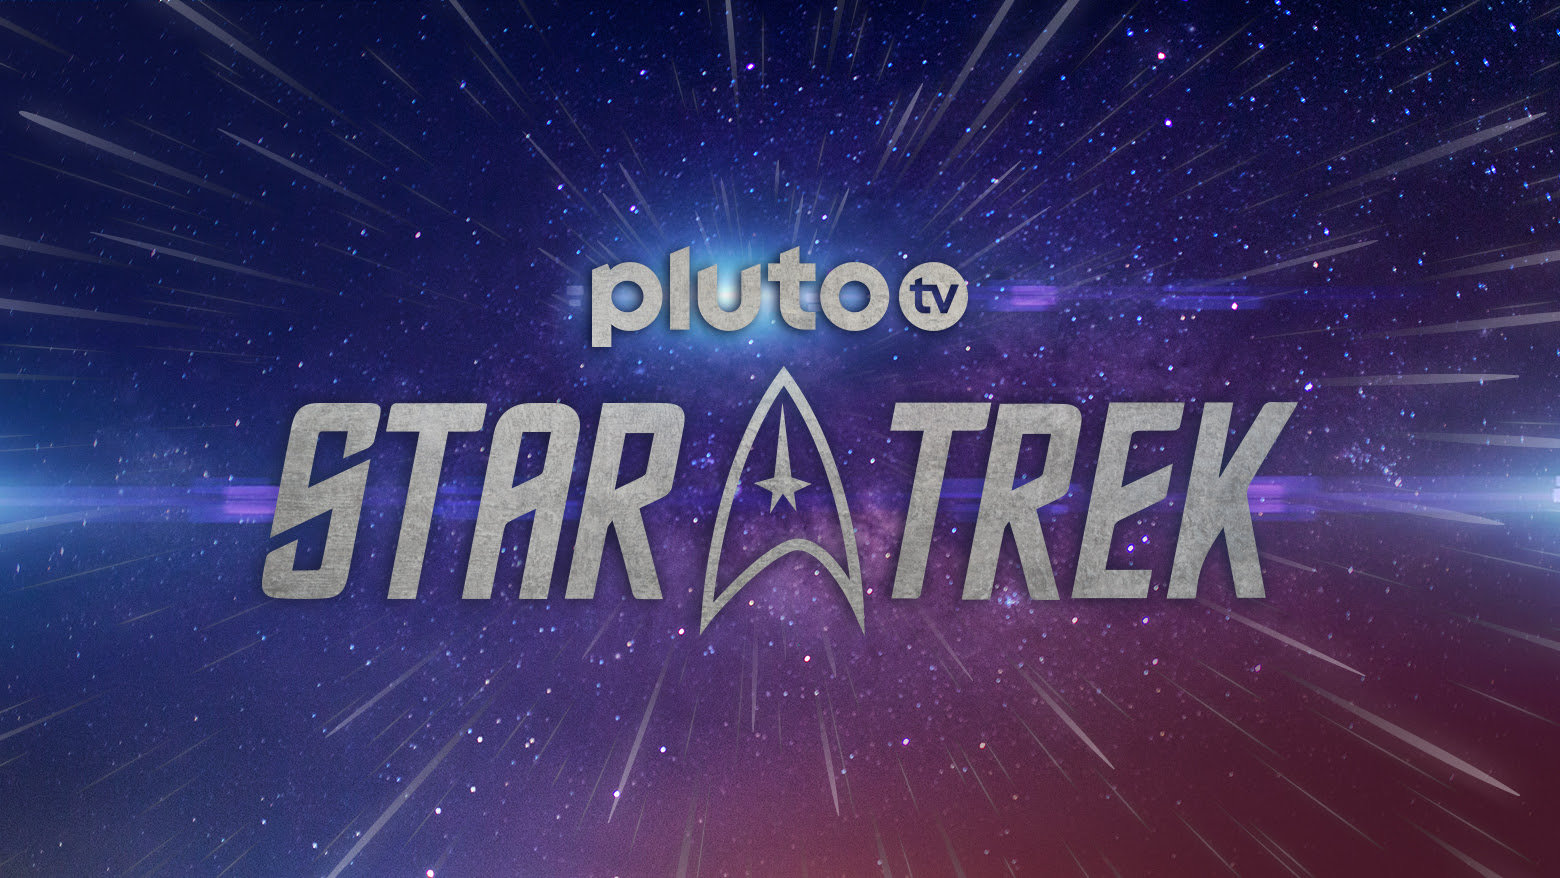 pluto tv star trek schedule